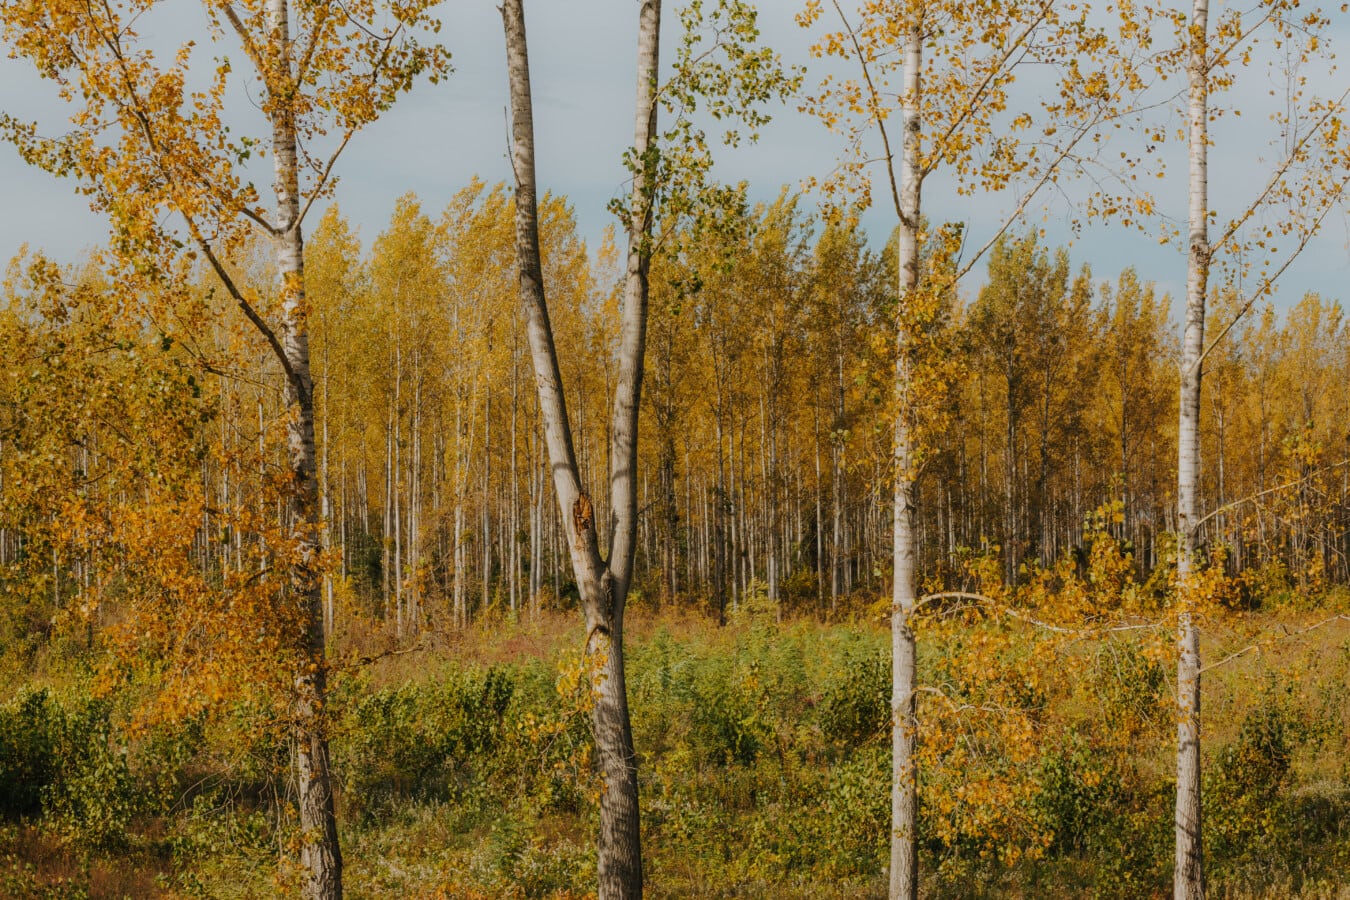 sunčano, jesen, narančasto žuta, boje, topola, šuma, stabla, priroda, list, drvo